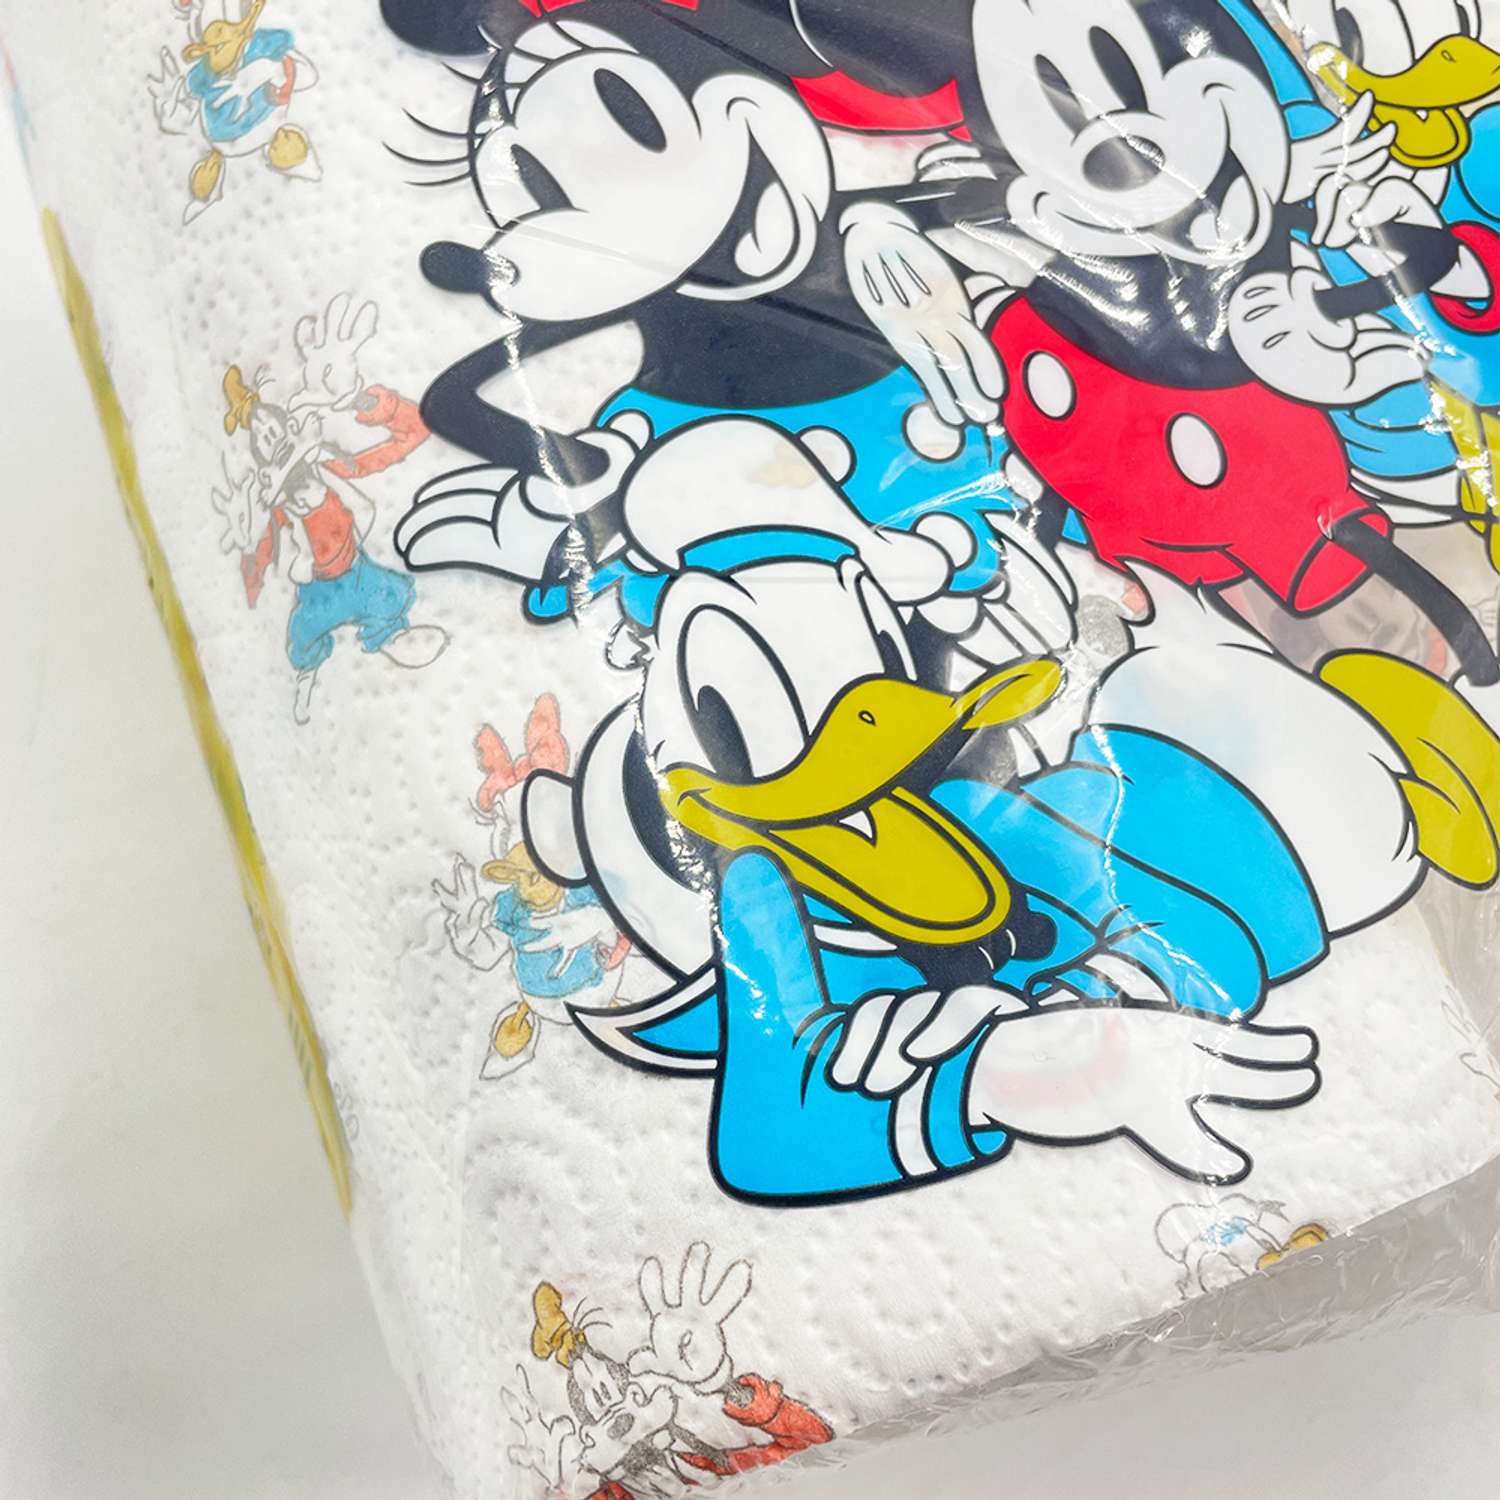 Полотенца бумажные с рисунком World cart Stay True из серии Disney 3 слоя 2 рулона 75 листов - фото 3